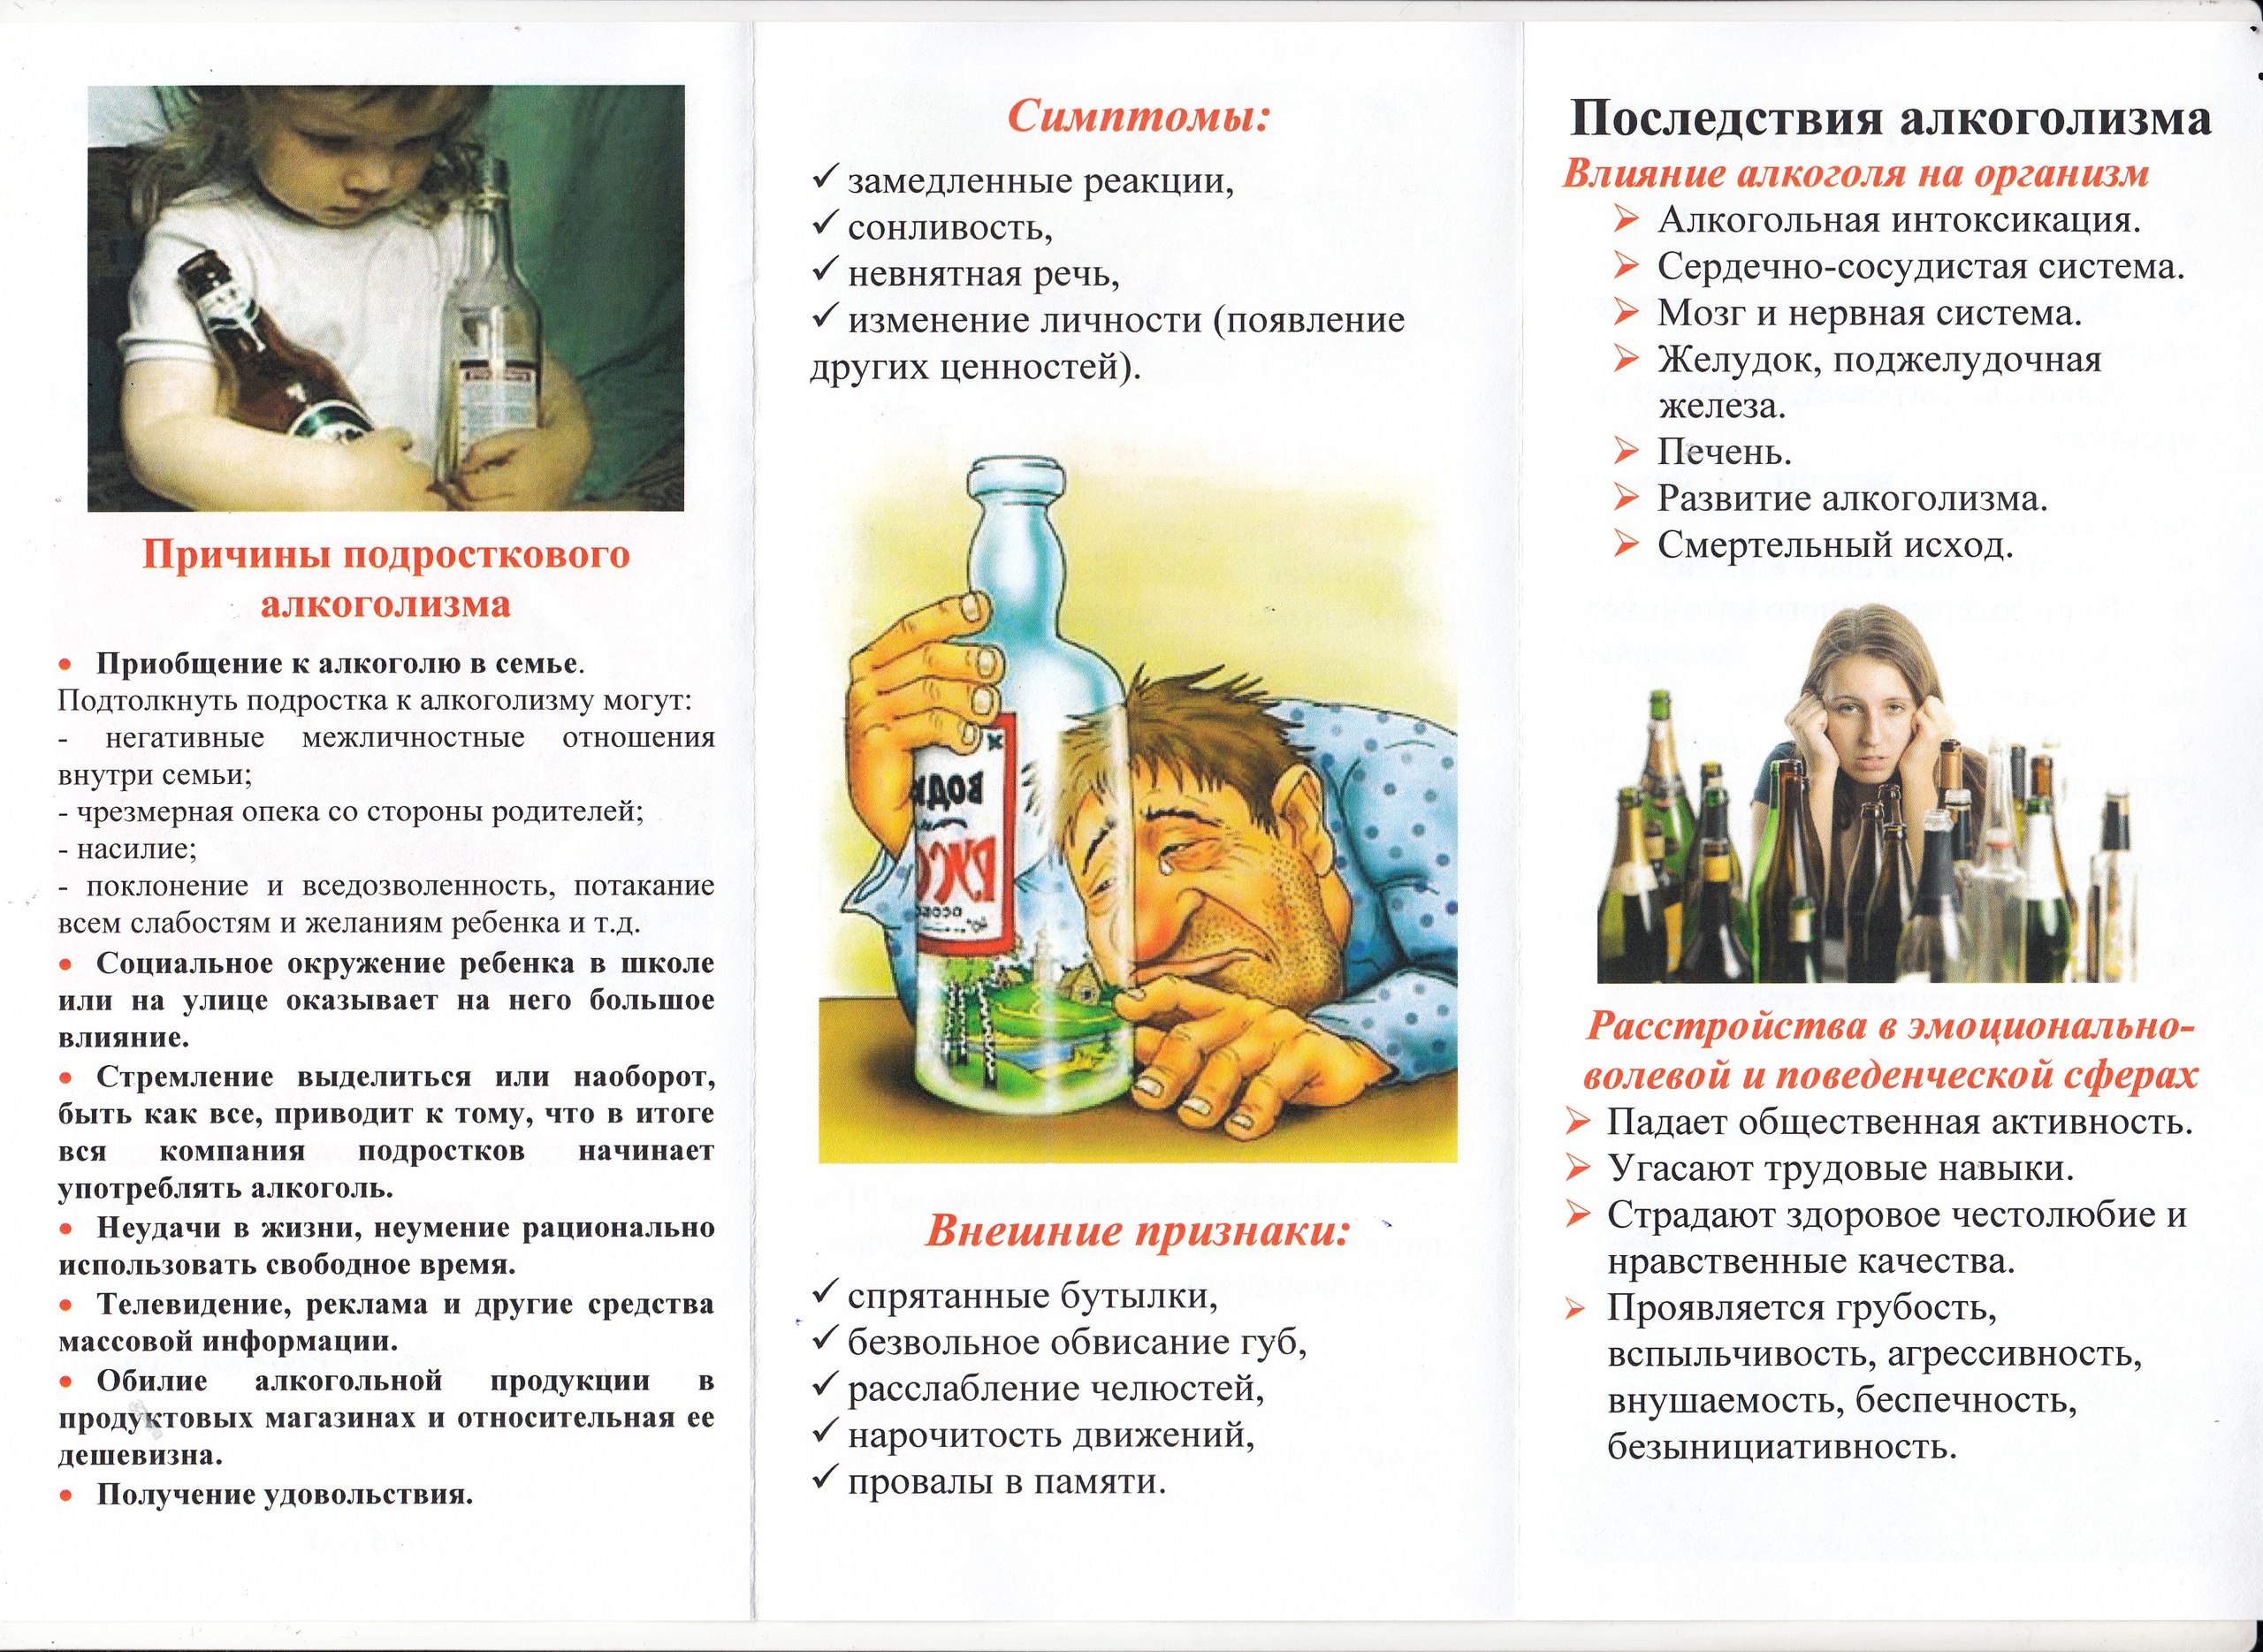 Брошюра о вреде алкоголя